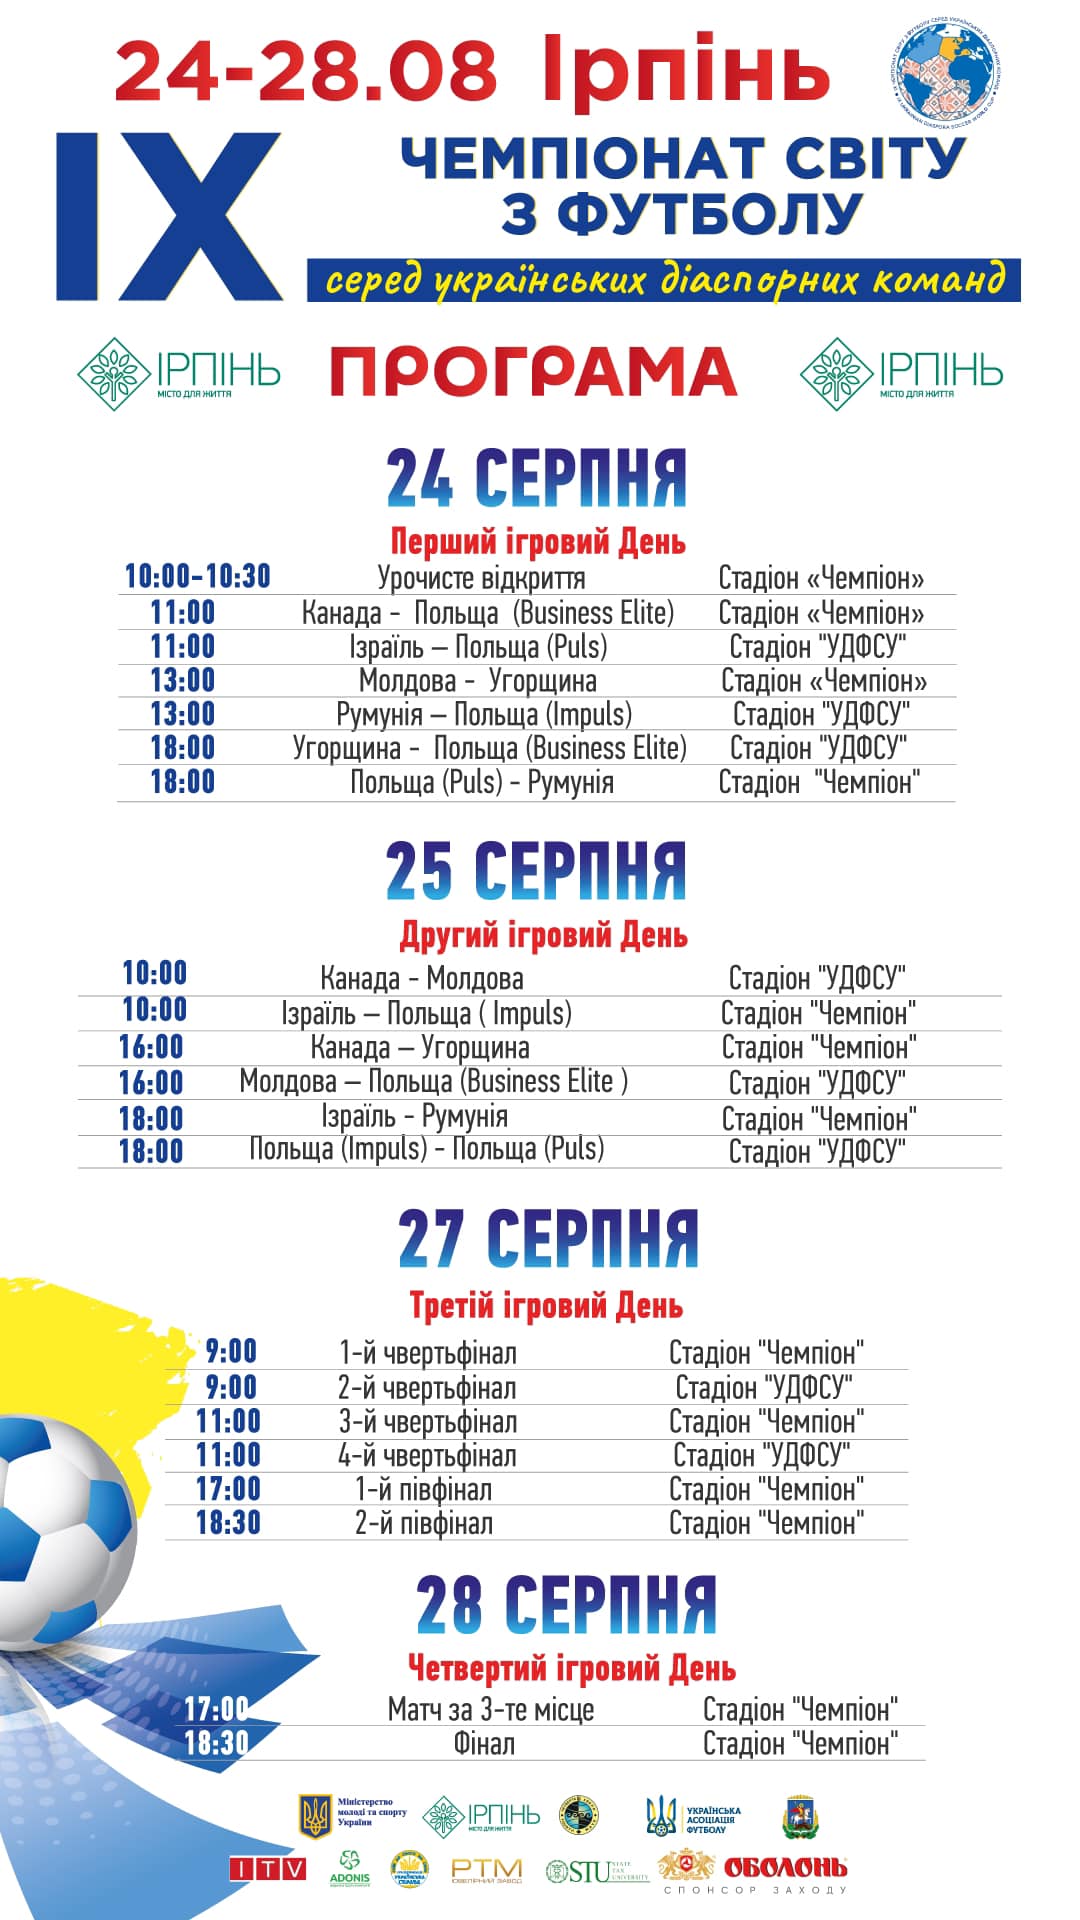 Українці з Канади, Ізраїлю, Угорщини, Румунії, Молдови і Польщі розіграють Чемпіонат діаспорних команд з футболу 